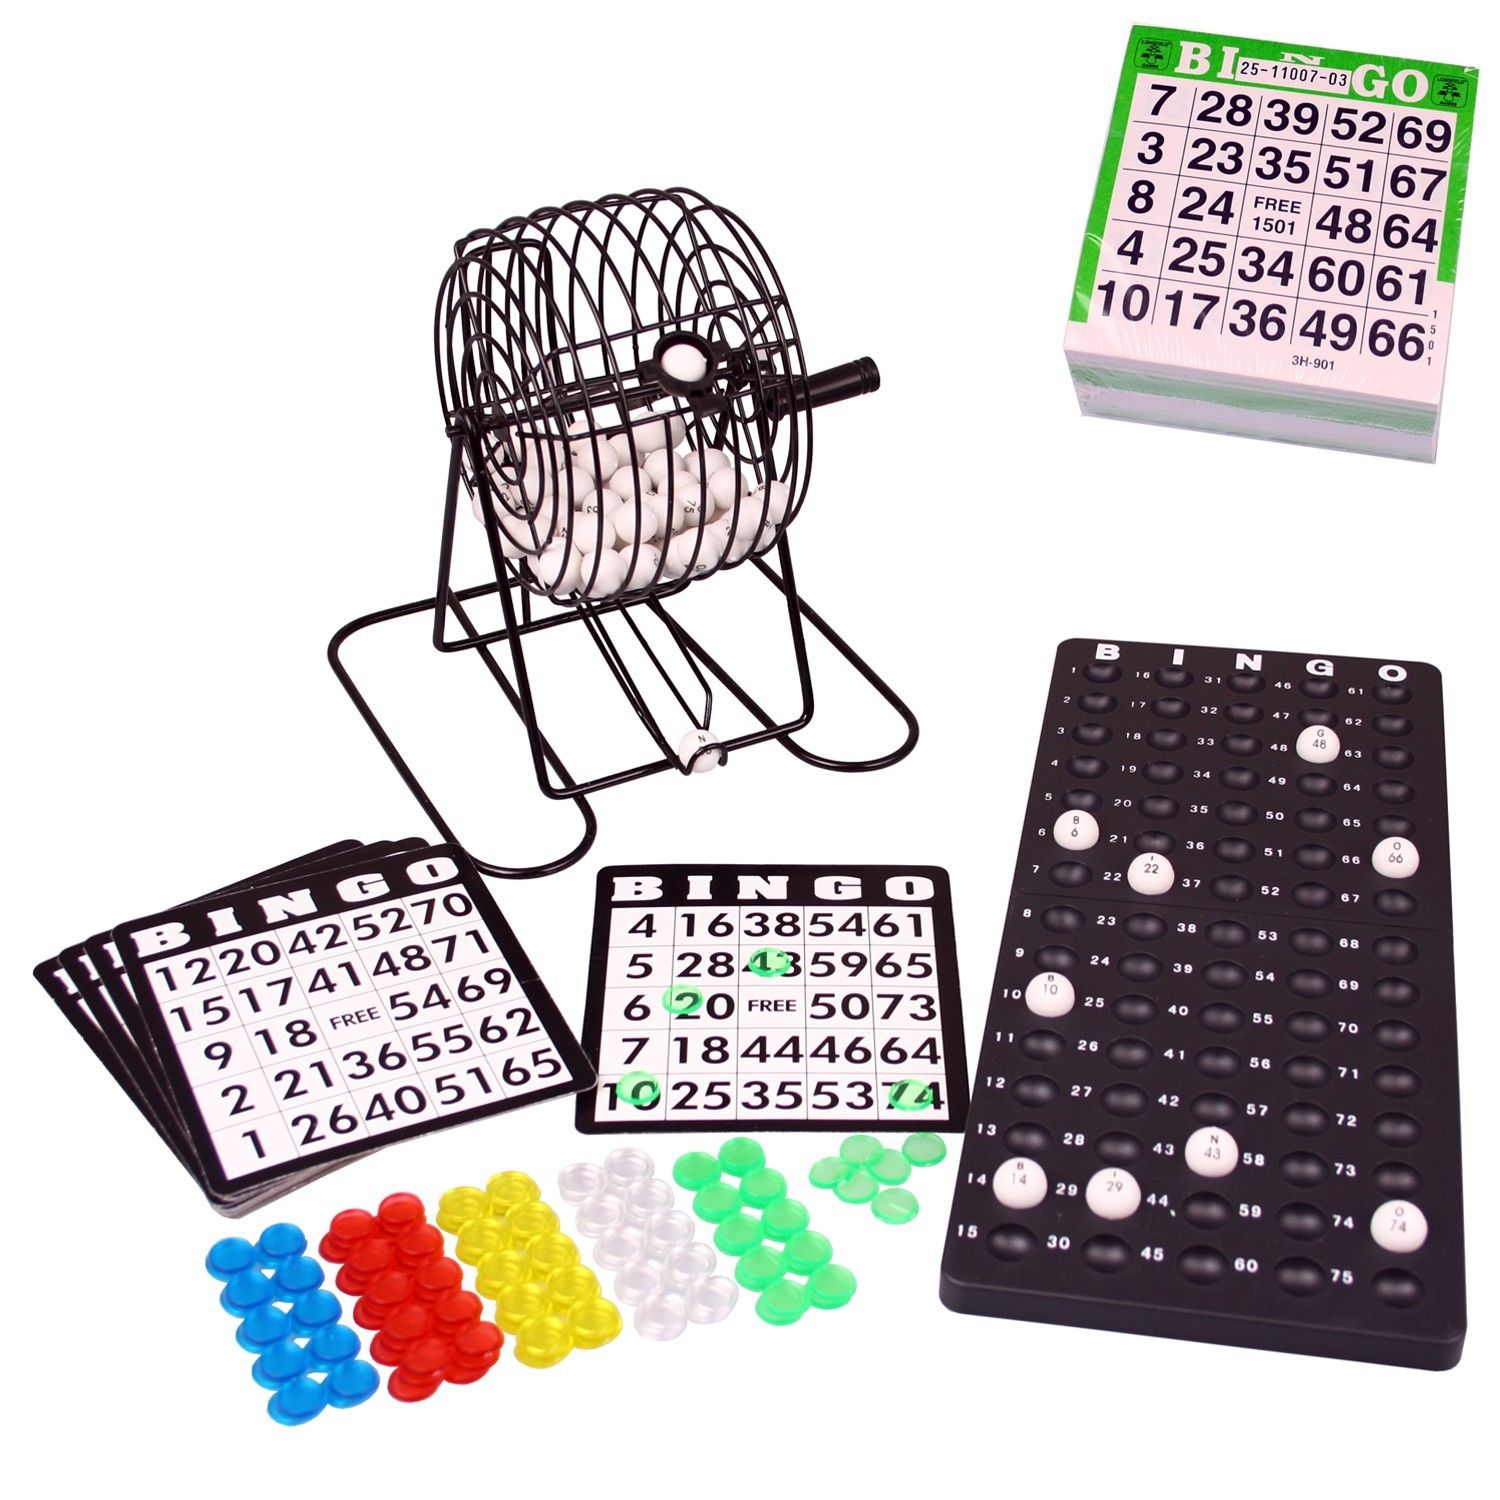 BINGO Spiel-Set XL mit Bingomühle Metall-Trommel Bingotrommel und Ticketblock